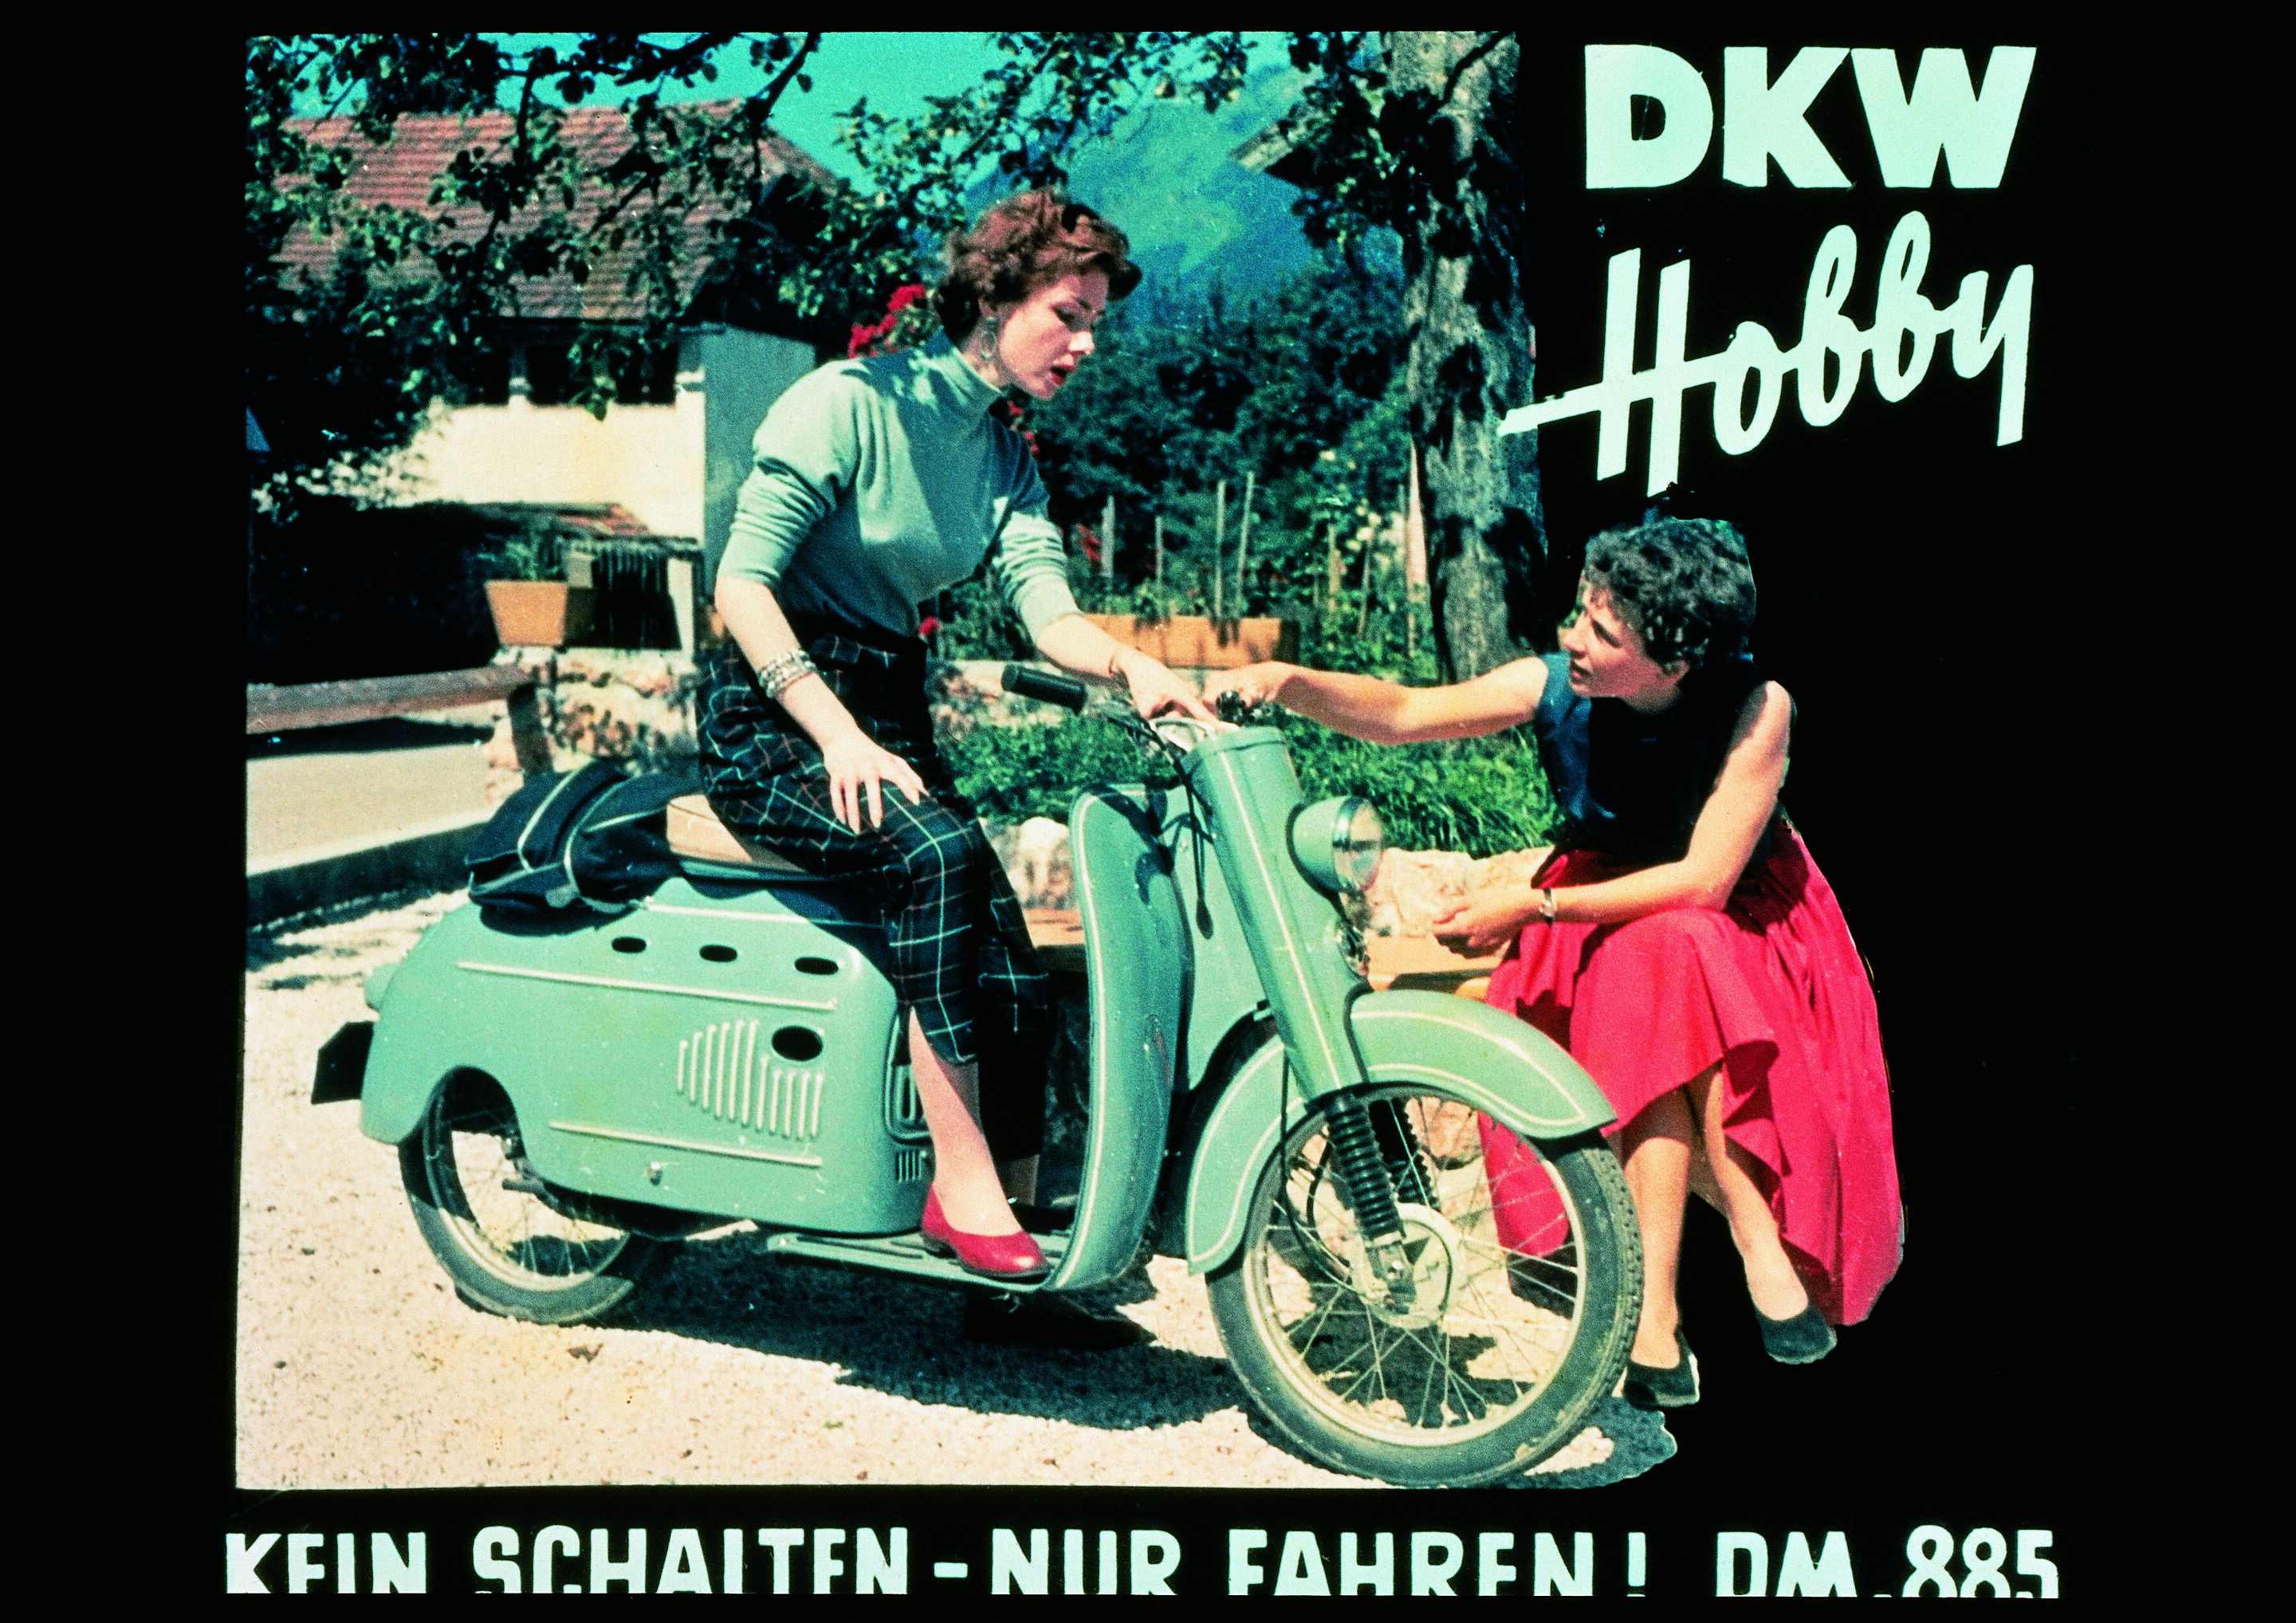 DKW Hobby-Roller, Einzelzylinder-Zweitaktmotor, 74 ccm, 3 PS, Höchstgeschwindigkeit: 60 km/h, Automatisiertes Uher-Getriebe, 1954-1957